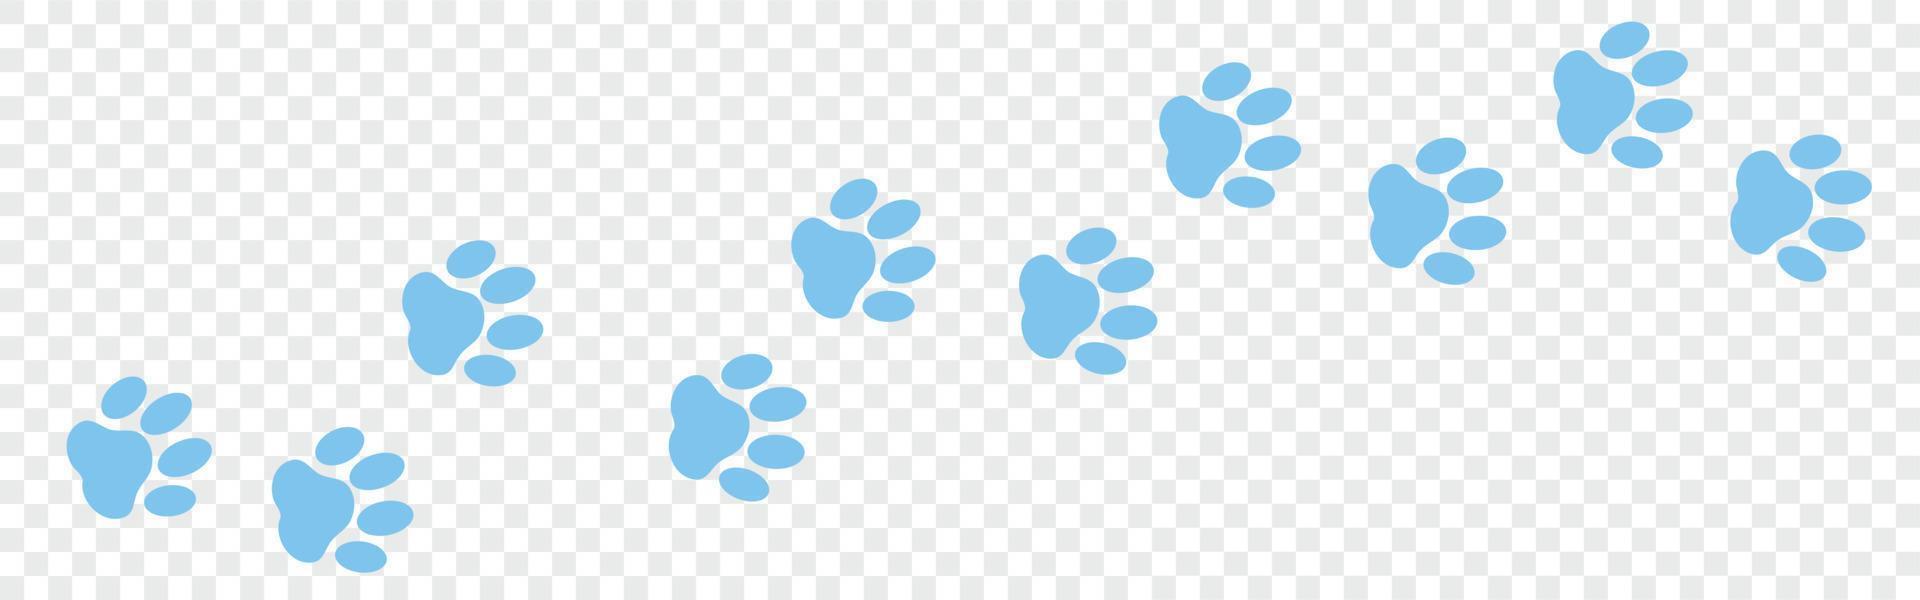 Blaues Pfotenabdrucksymbol isoliertes nahtloses Muster auf transparentem Hintergrund. Hunde- oder Katzenpfotenabdruck. Tierspur. Vektor-Illustration vektor